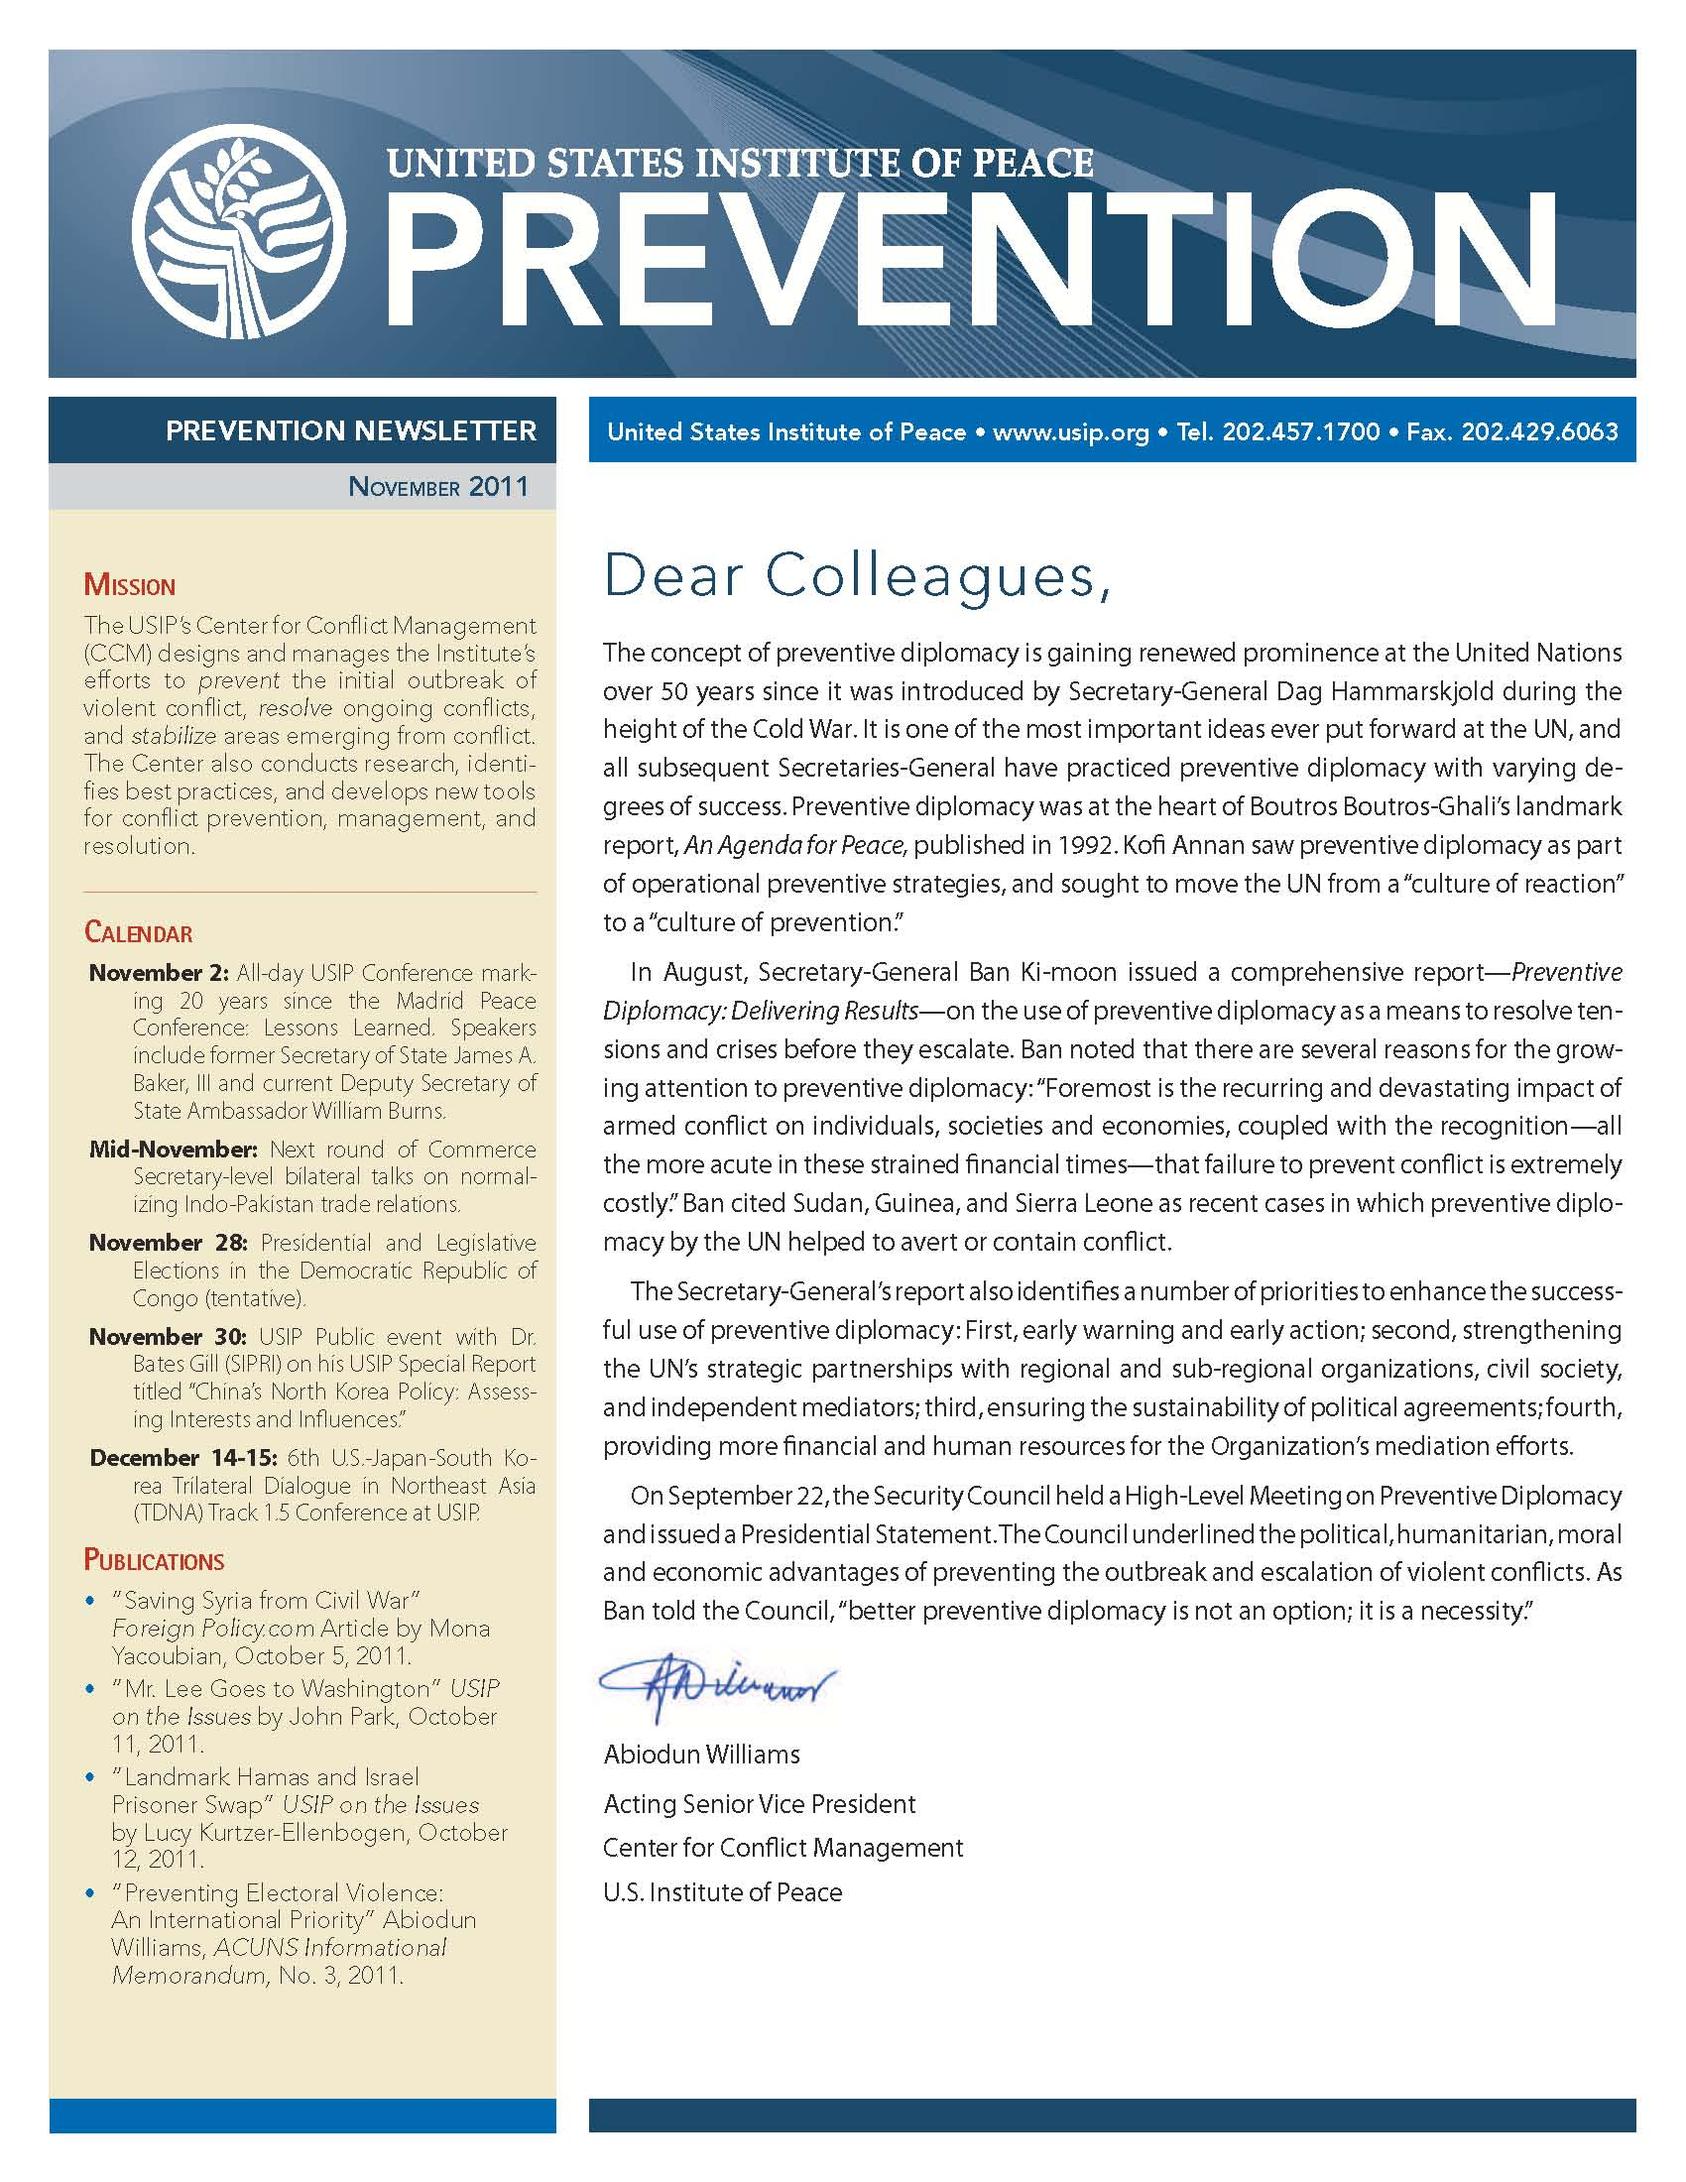 USIP Prevention Newsletter - November 2011